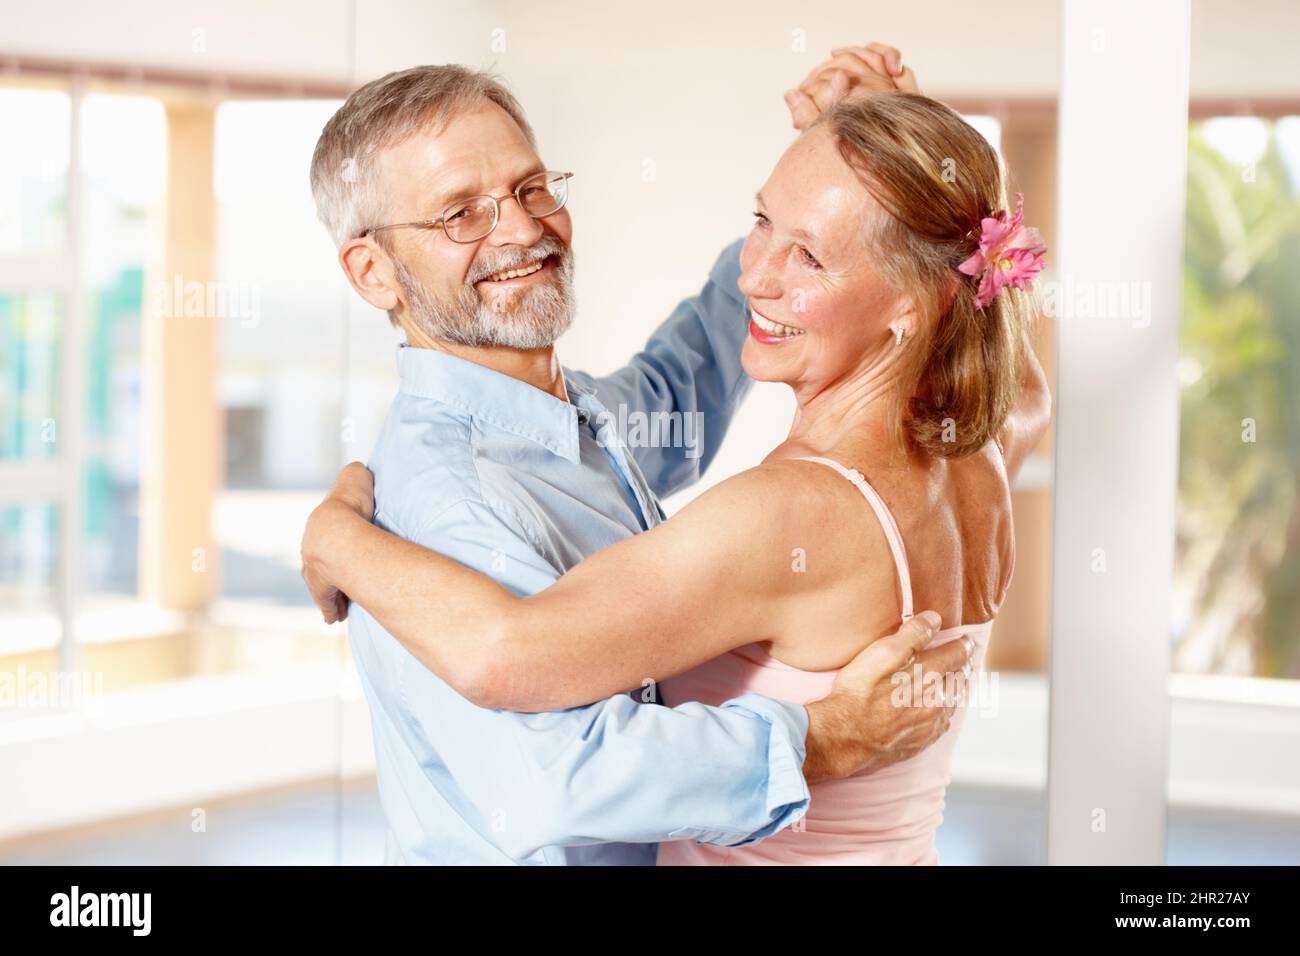 Cela fait des années que le danseur danse comme ça. Photo d'une salle de bal de couple mature dansant ensemble à l'intérieur. Banque D'Images